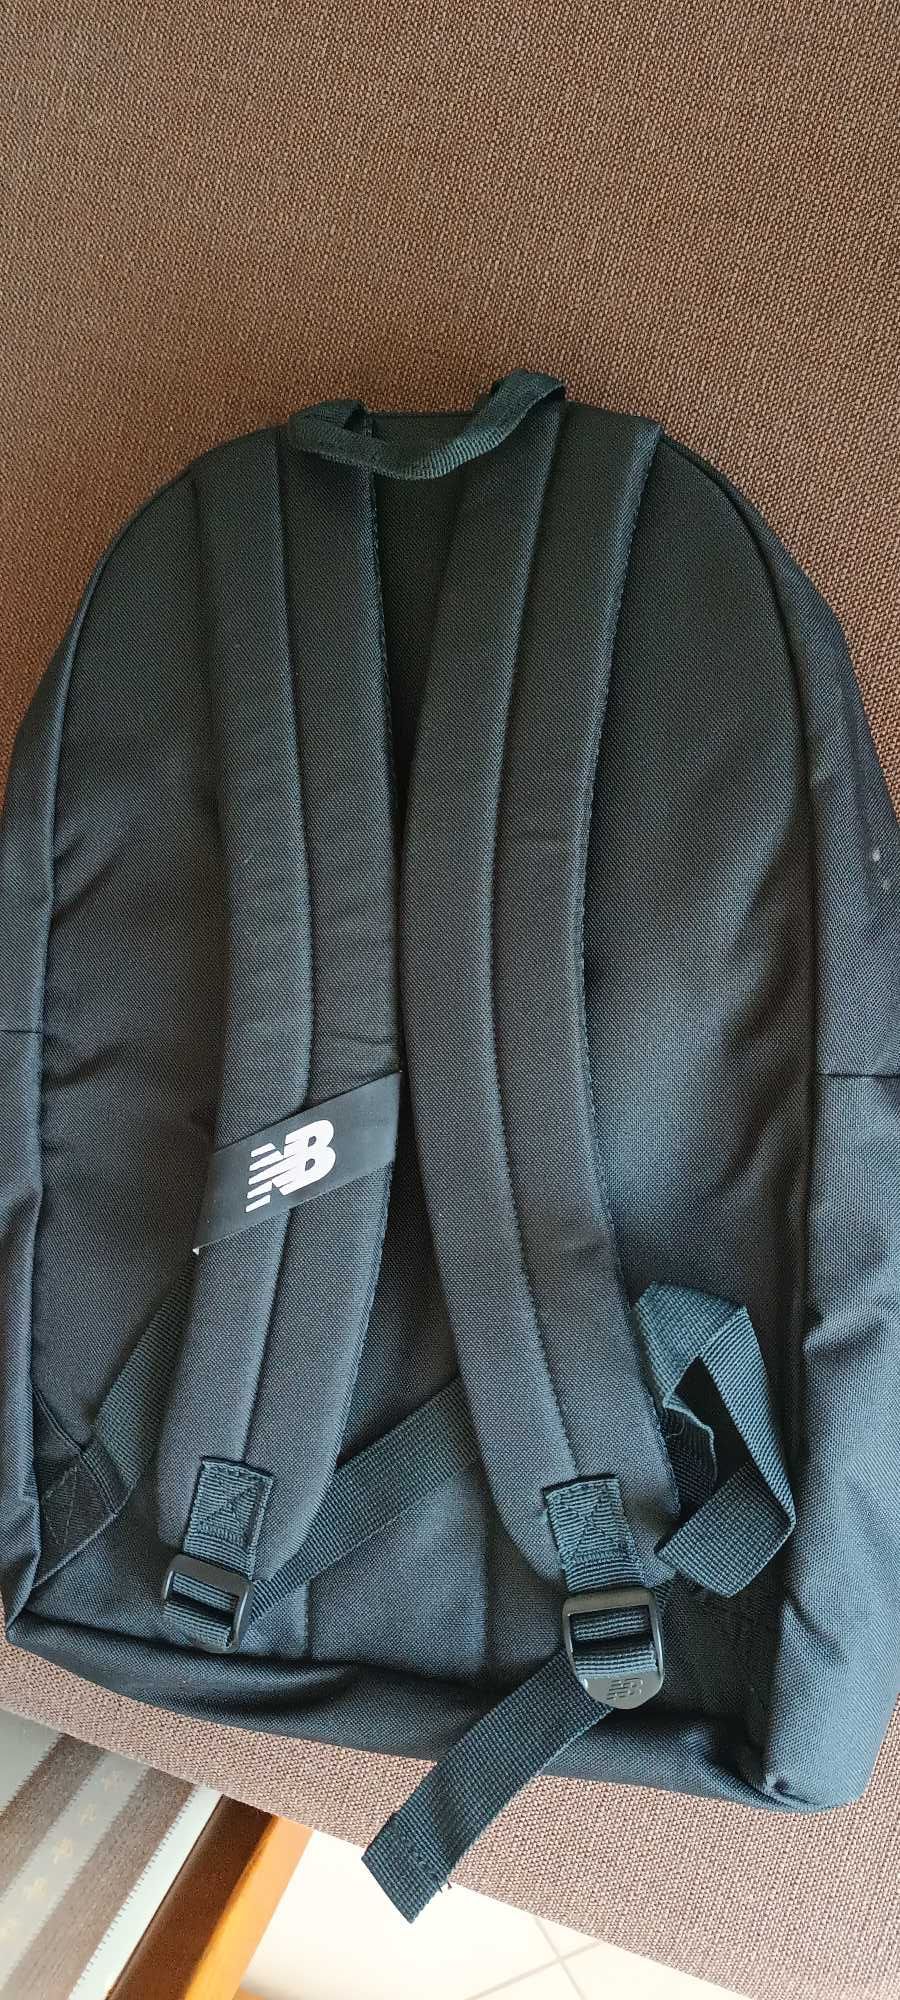 Plecak szkolny New Balance torba czarny nike NB "usztywnione plecy"